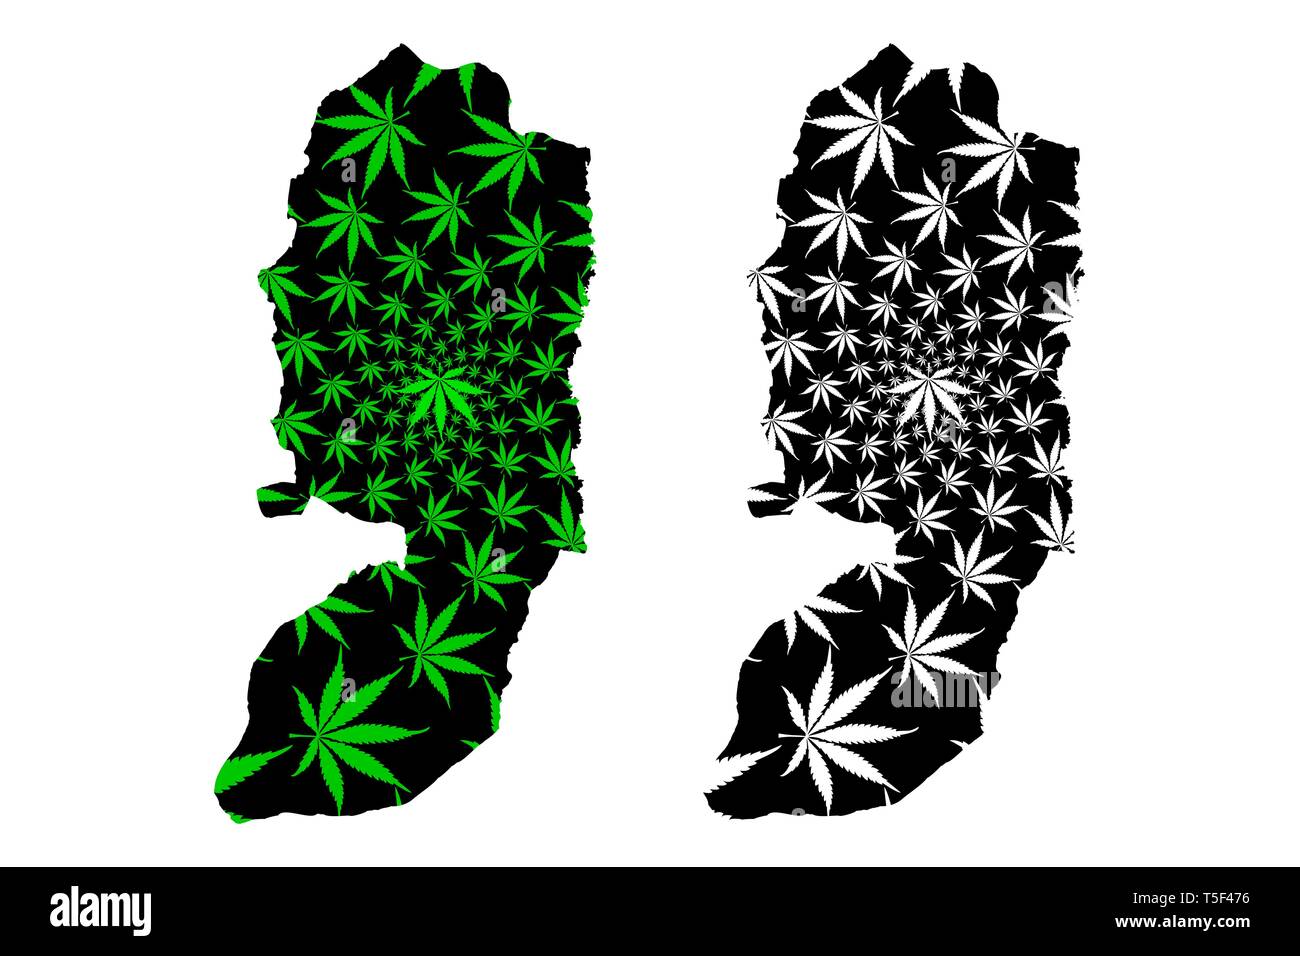 West Bank - Karte ist Cannabis blatt grün und schwarz gestaltet, West Bank Karte aus Marihuana (Marihuana, THC) Laub, Stock Vektor